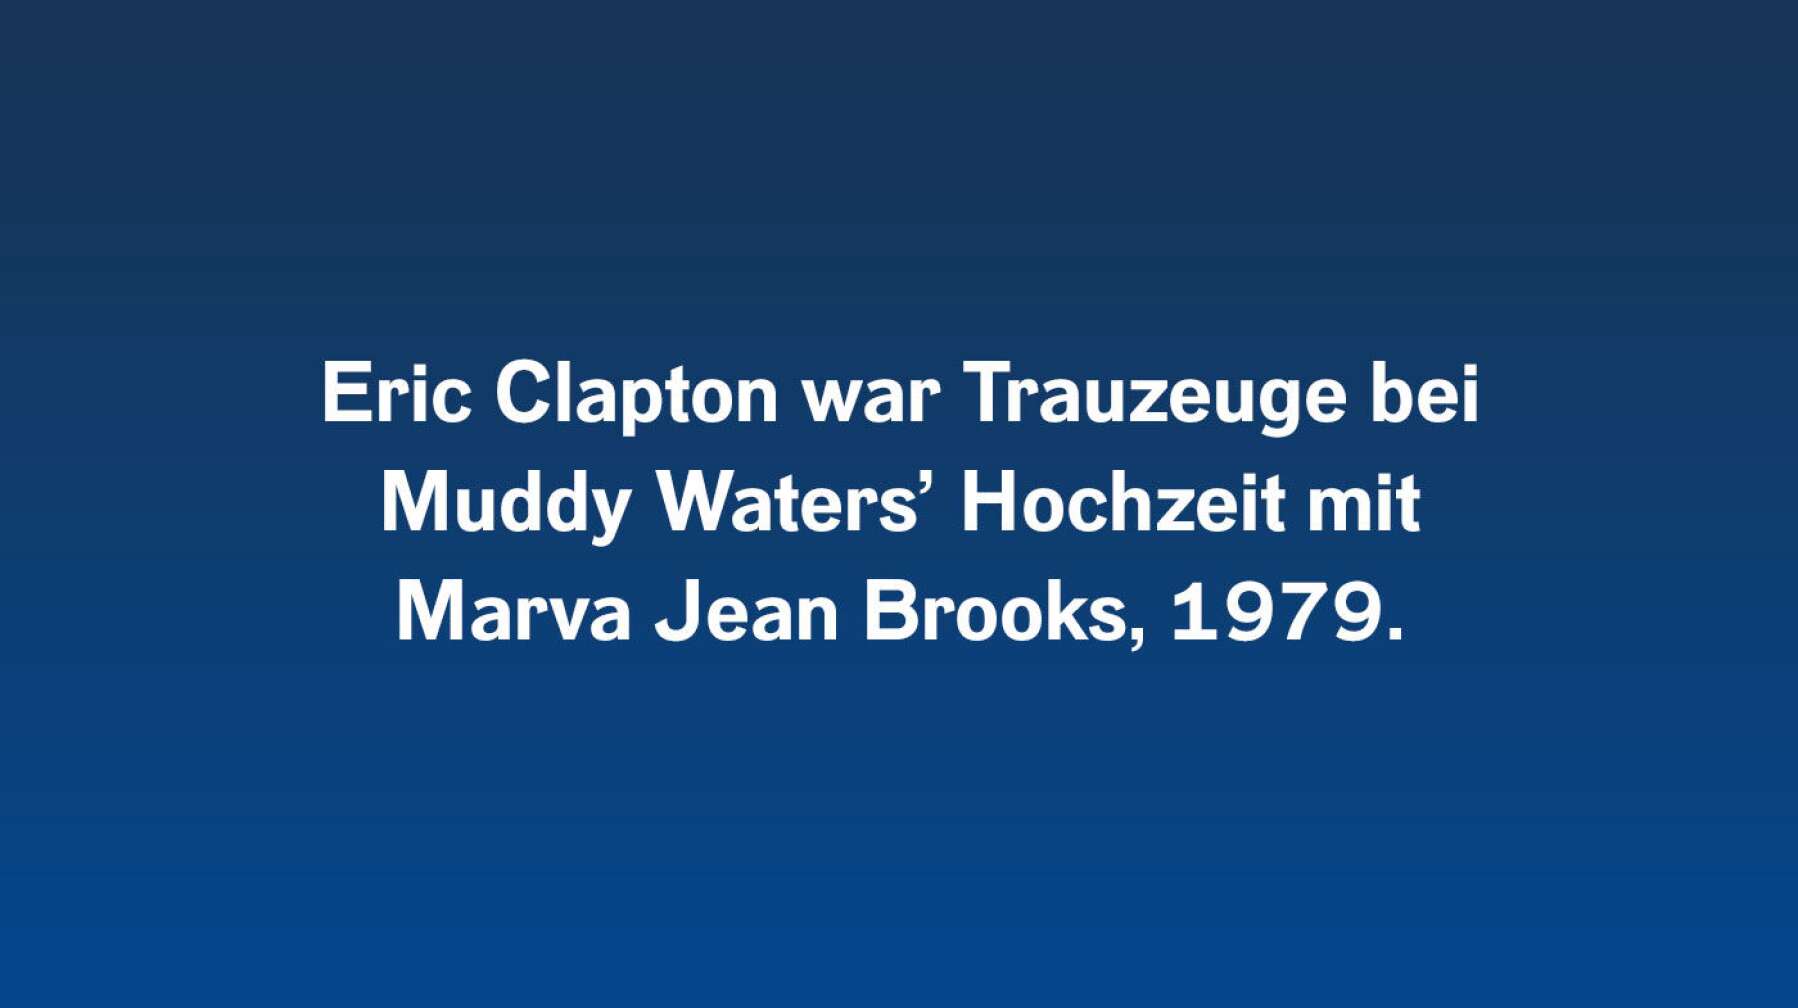 6 Fakten über Muddy Waters #4